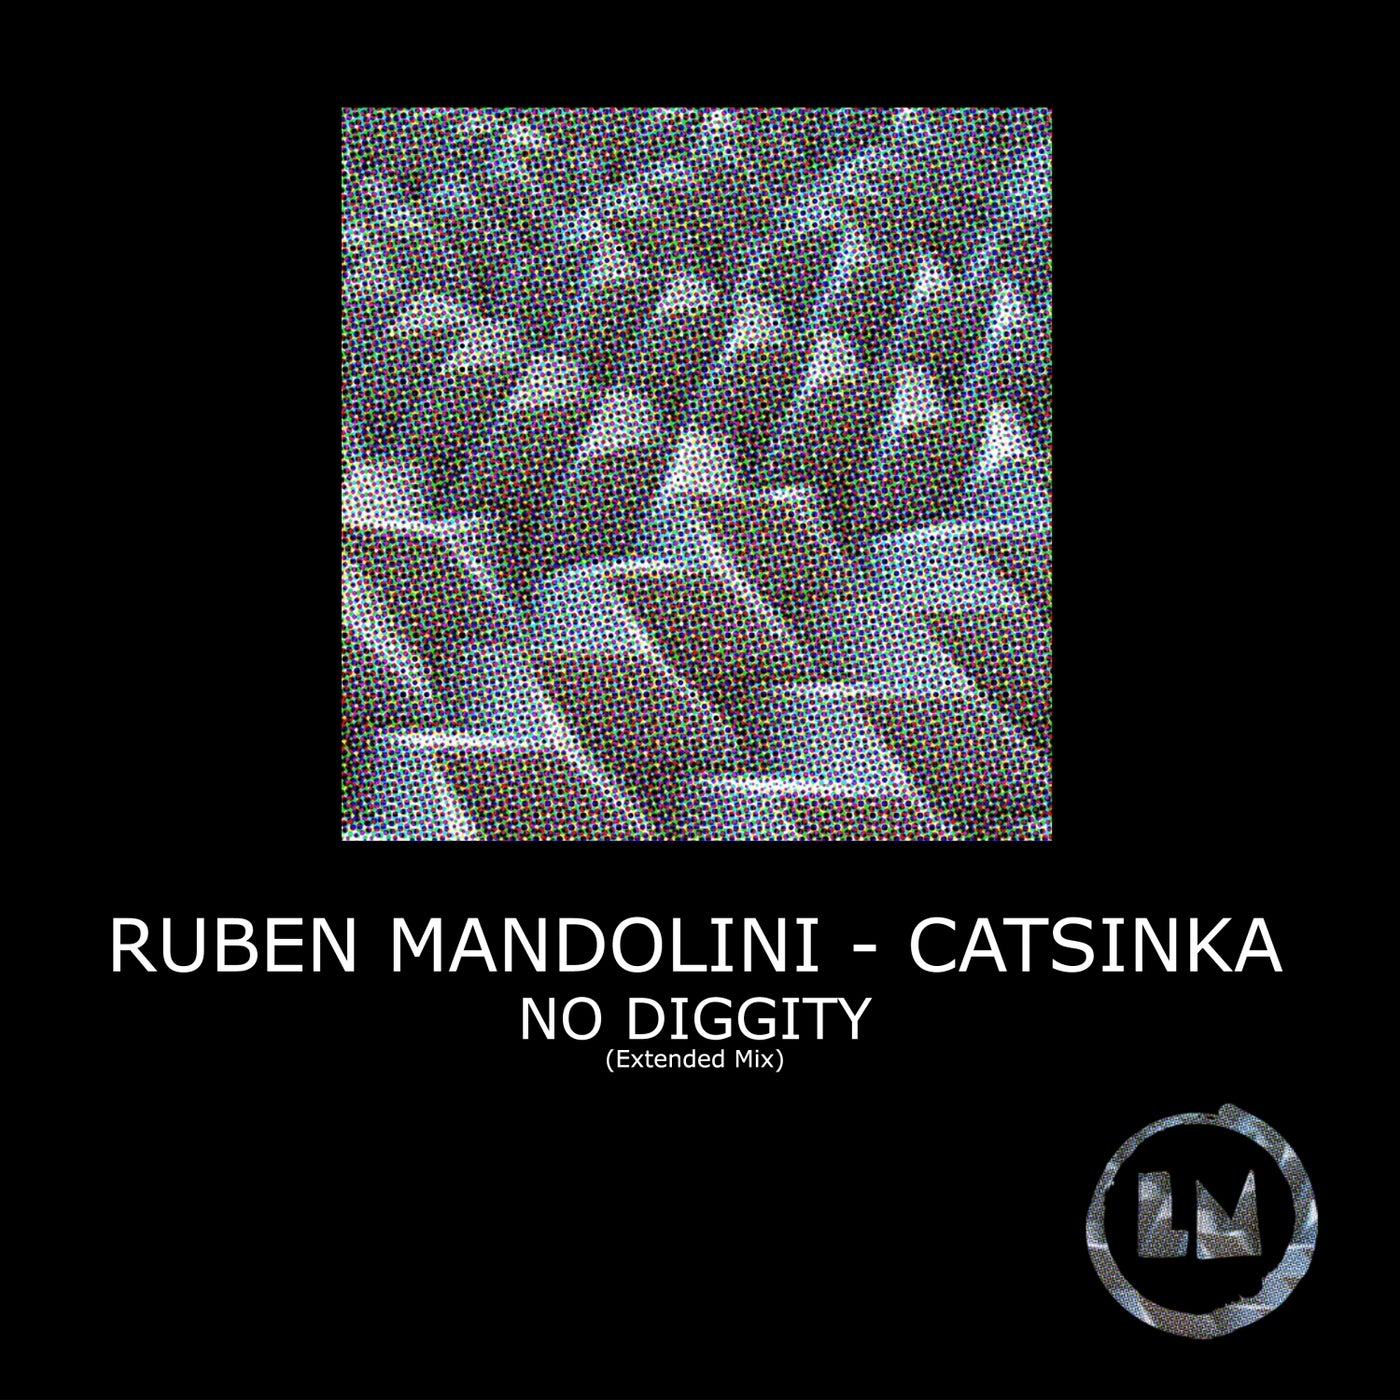 Ruben Mandolini, Catsinka – No Diggity (Extended Mixes) [LPS297D]